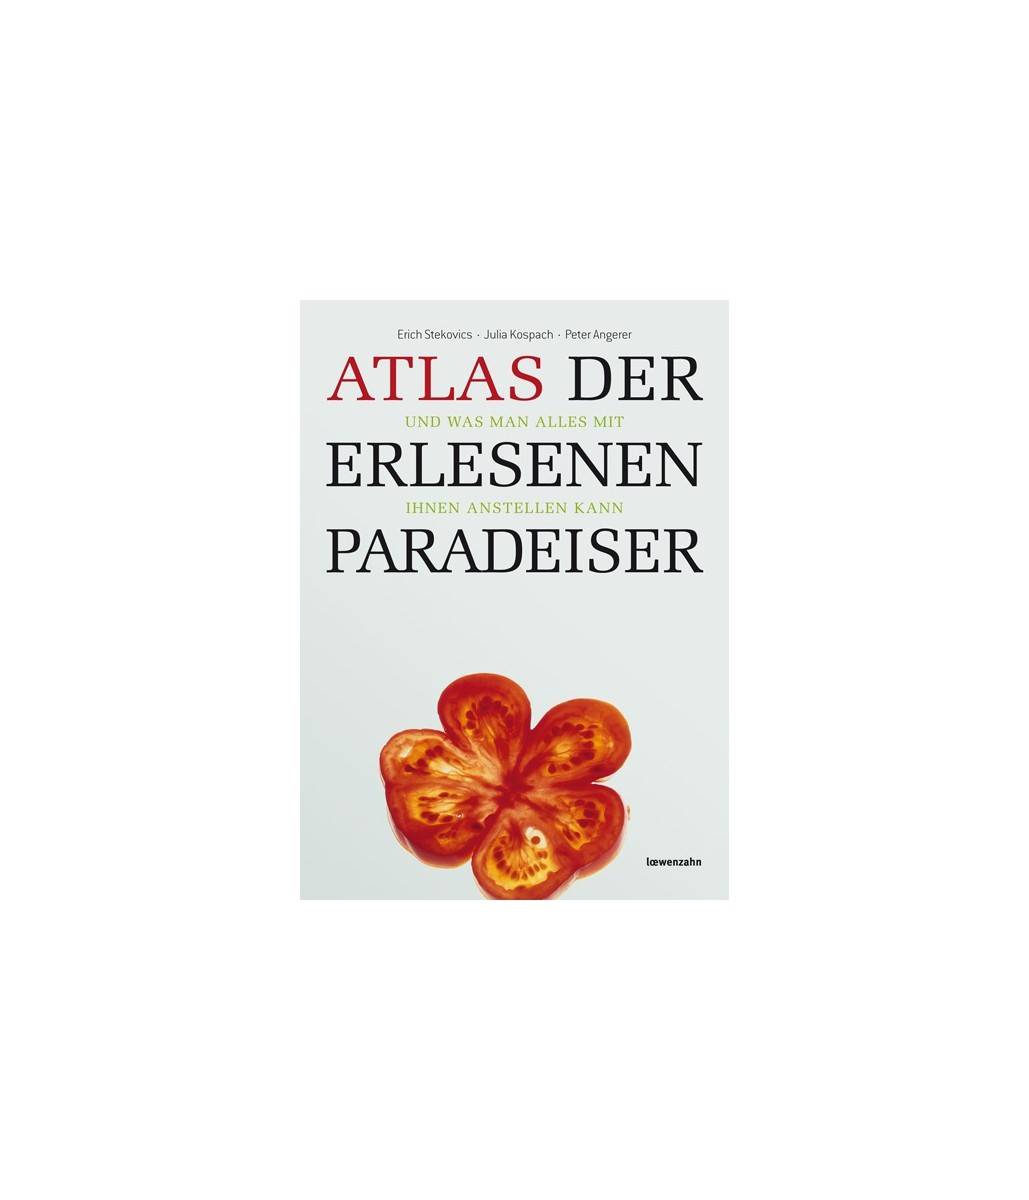 Atlas der erlesenen Paradeiser